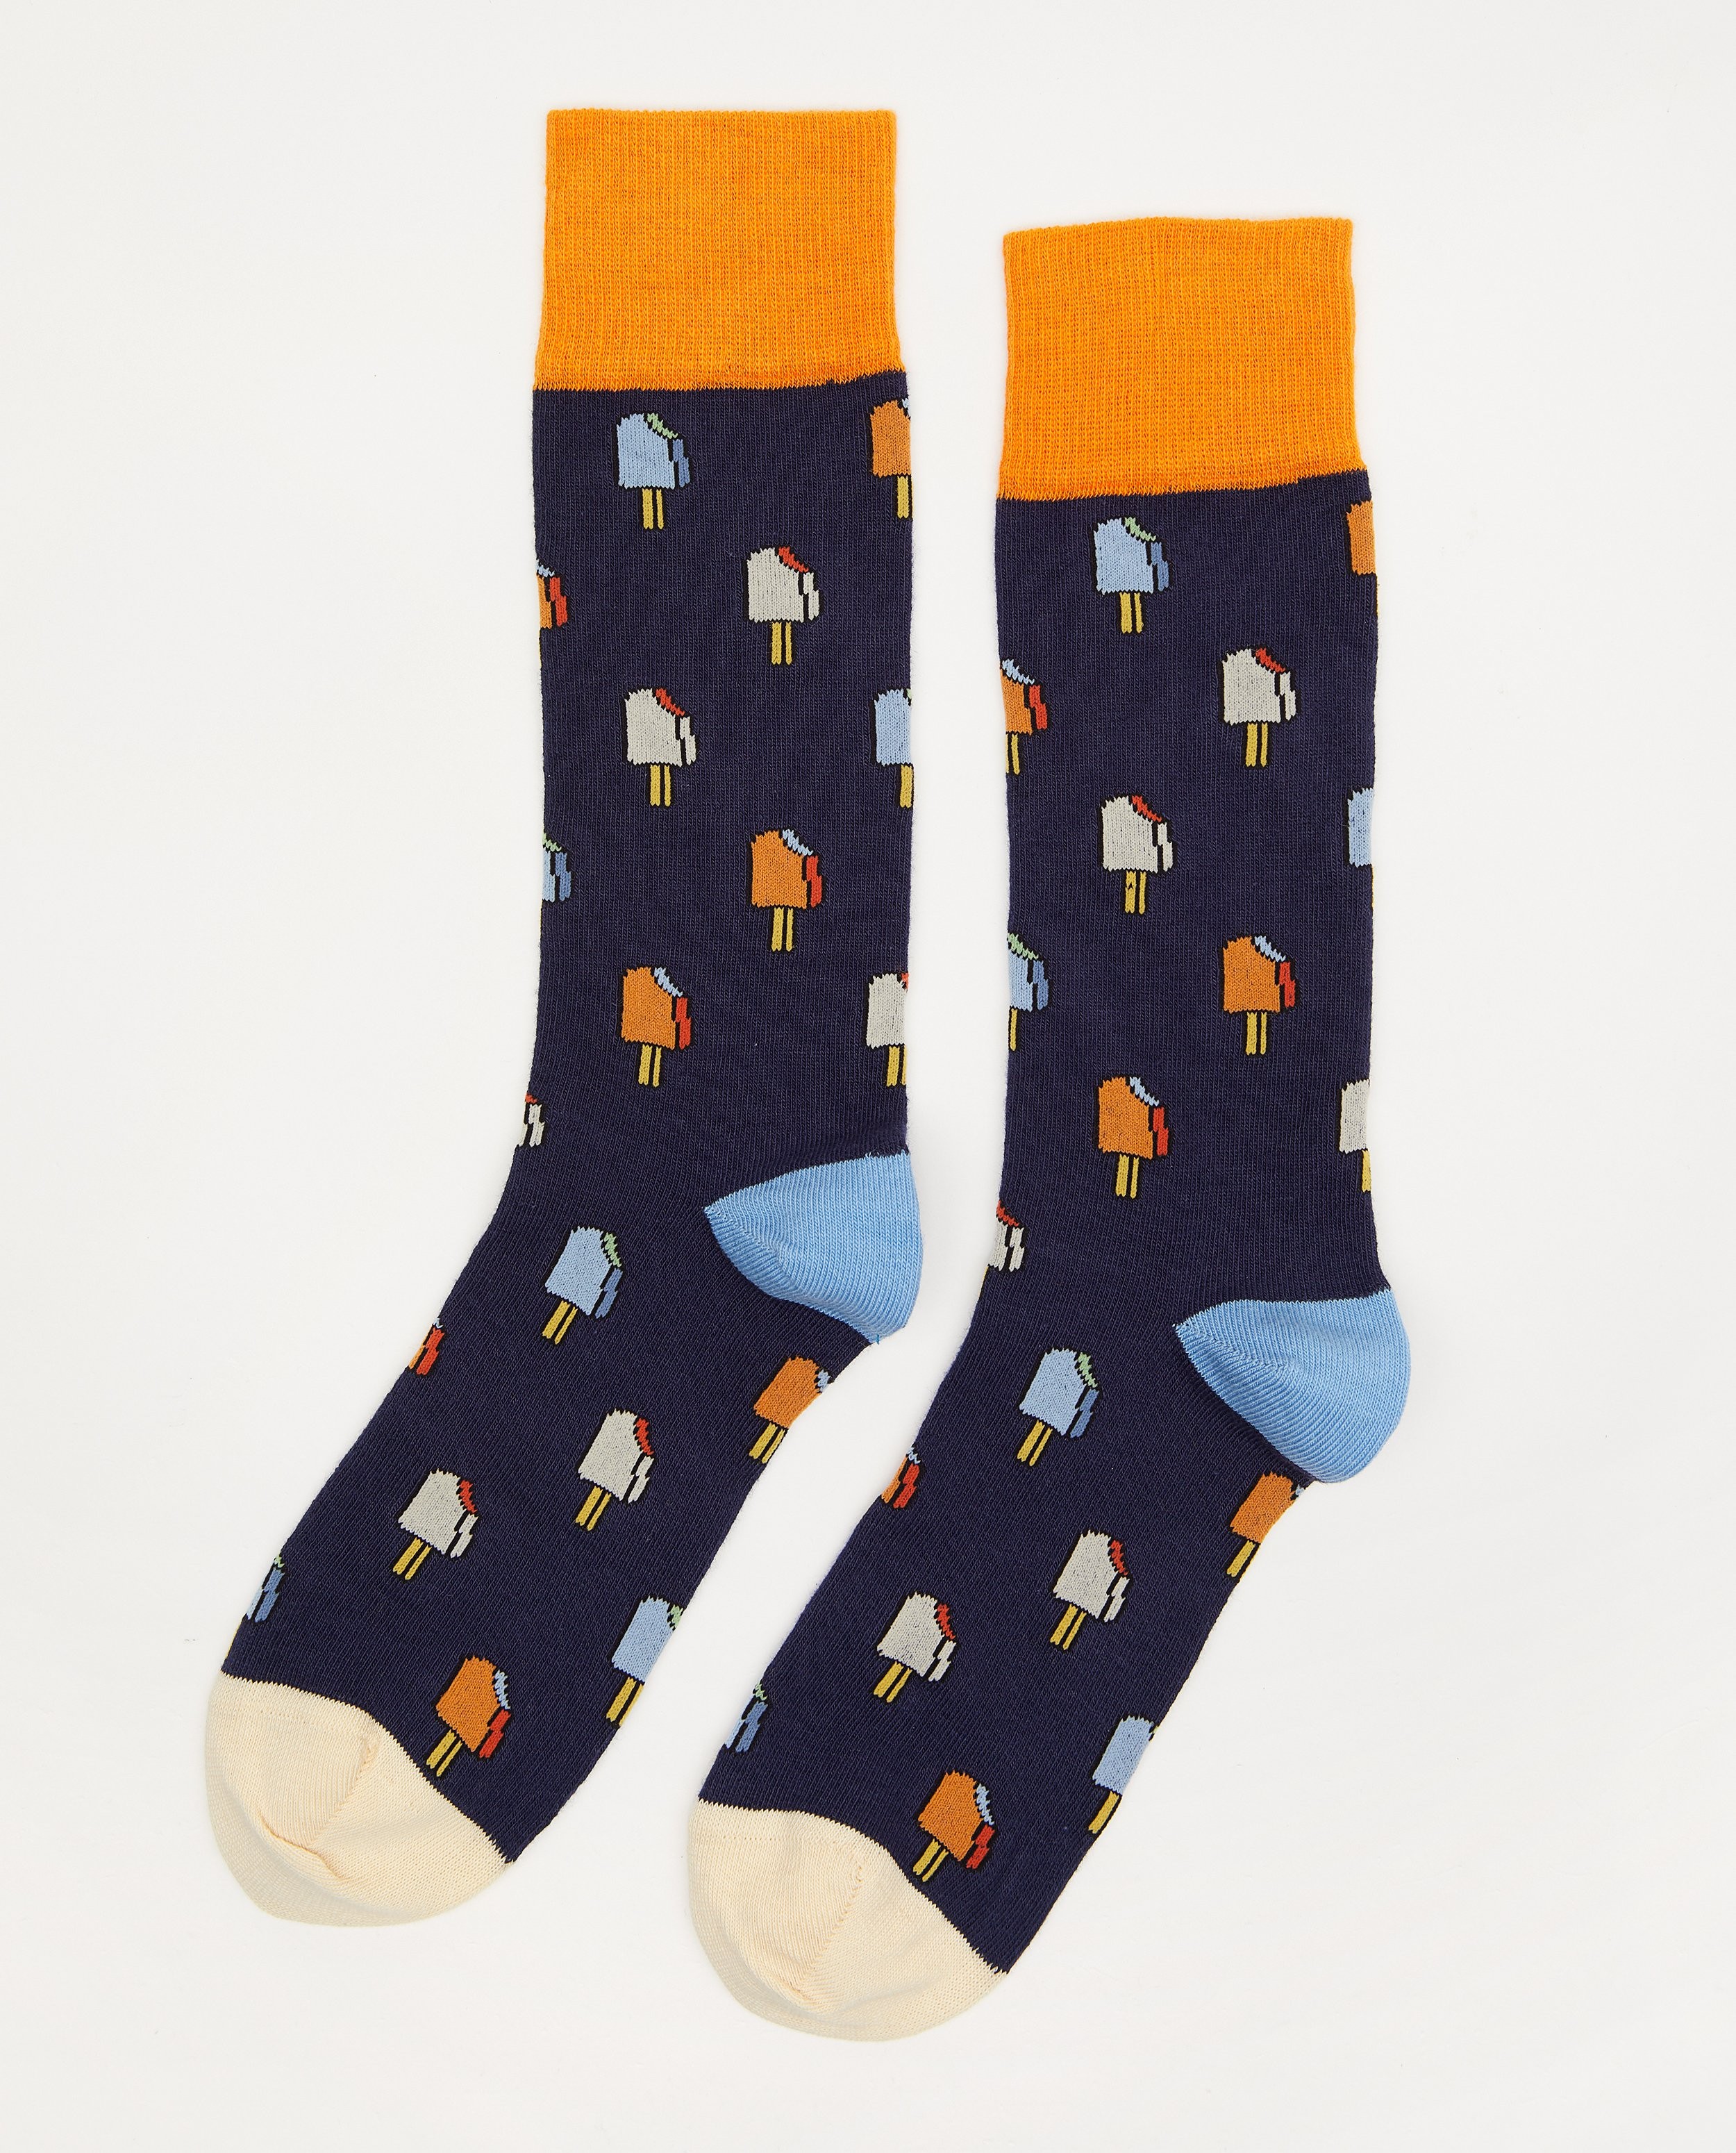 Chaussettes en coton bio Dilly Socks, pointure 41-46 - à imprimé de glaces - Dilly Socks